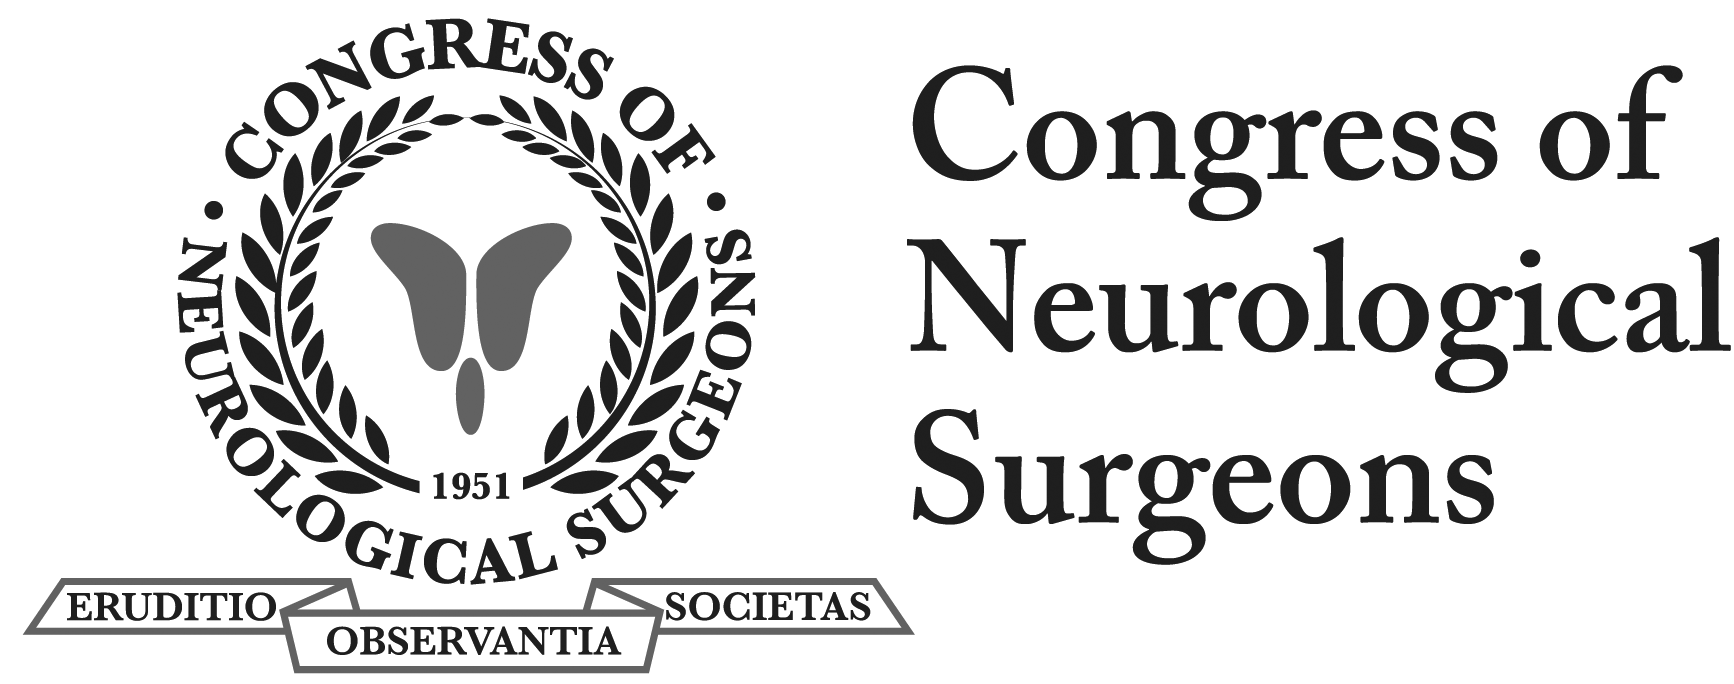 The Congress of Neurological Surgeons